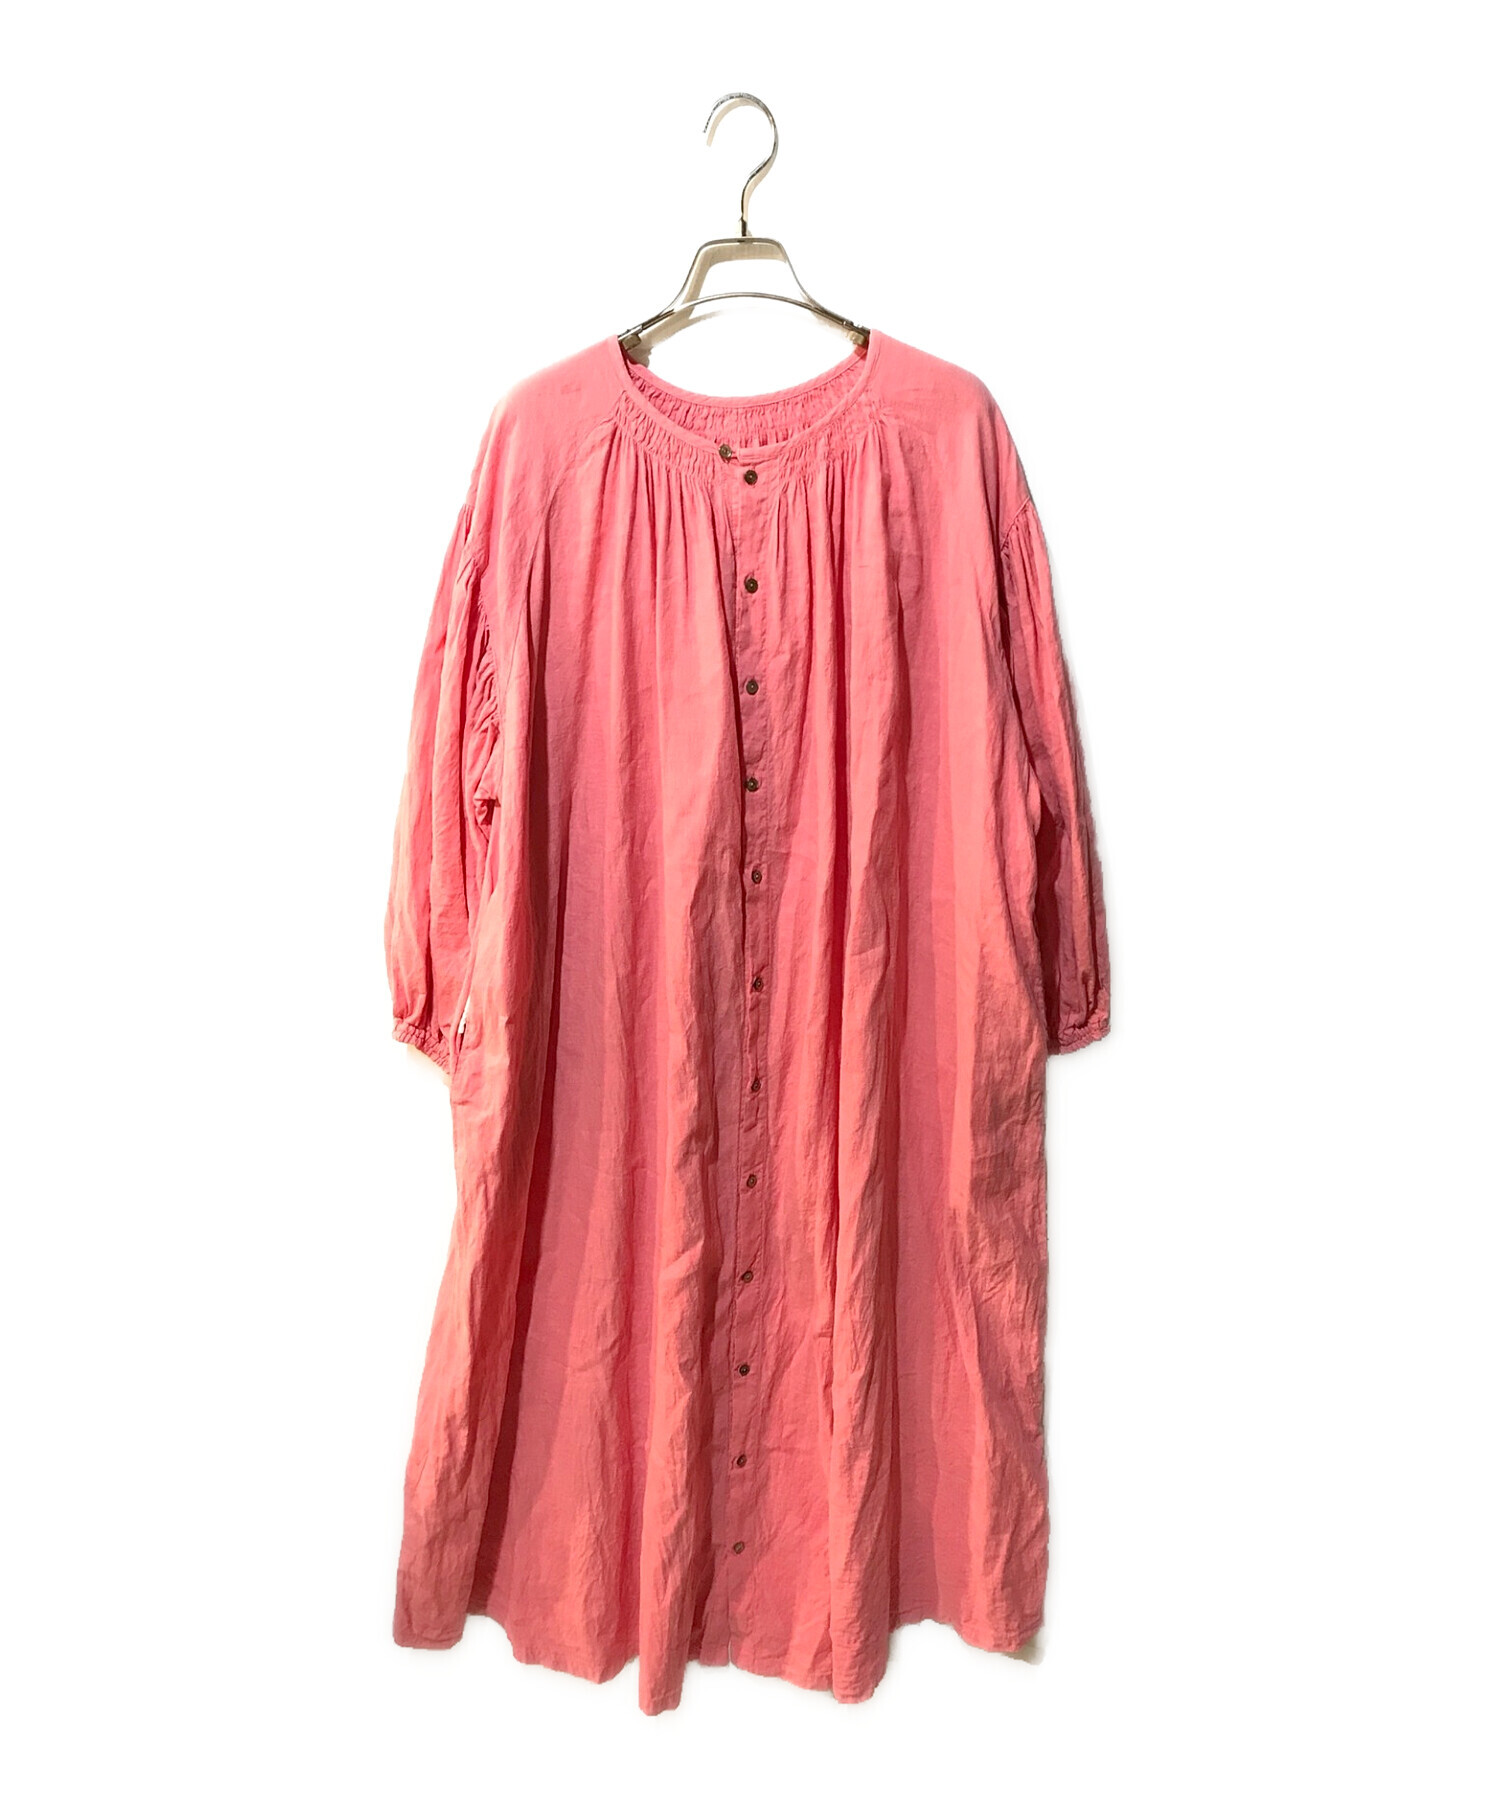 nest Robe (ネストローブ) 近江晒しメニーギャザードレス 01241-1475 ピンク サイズ:Free